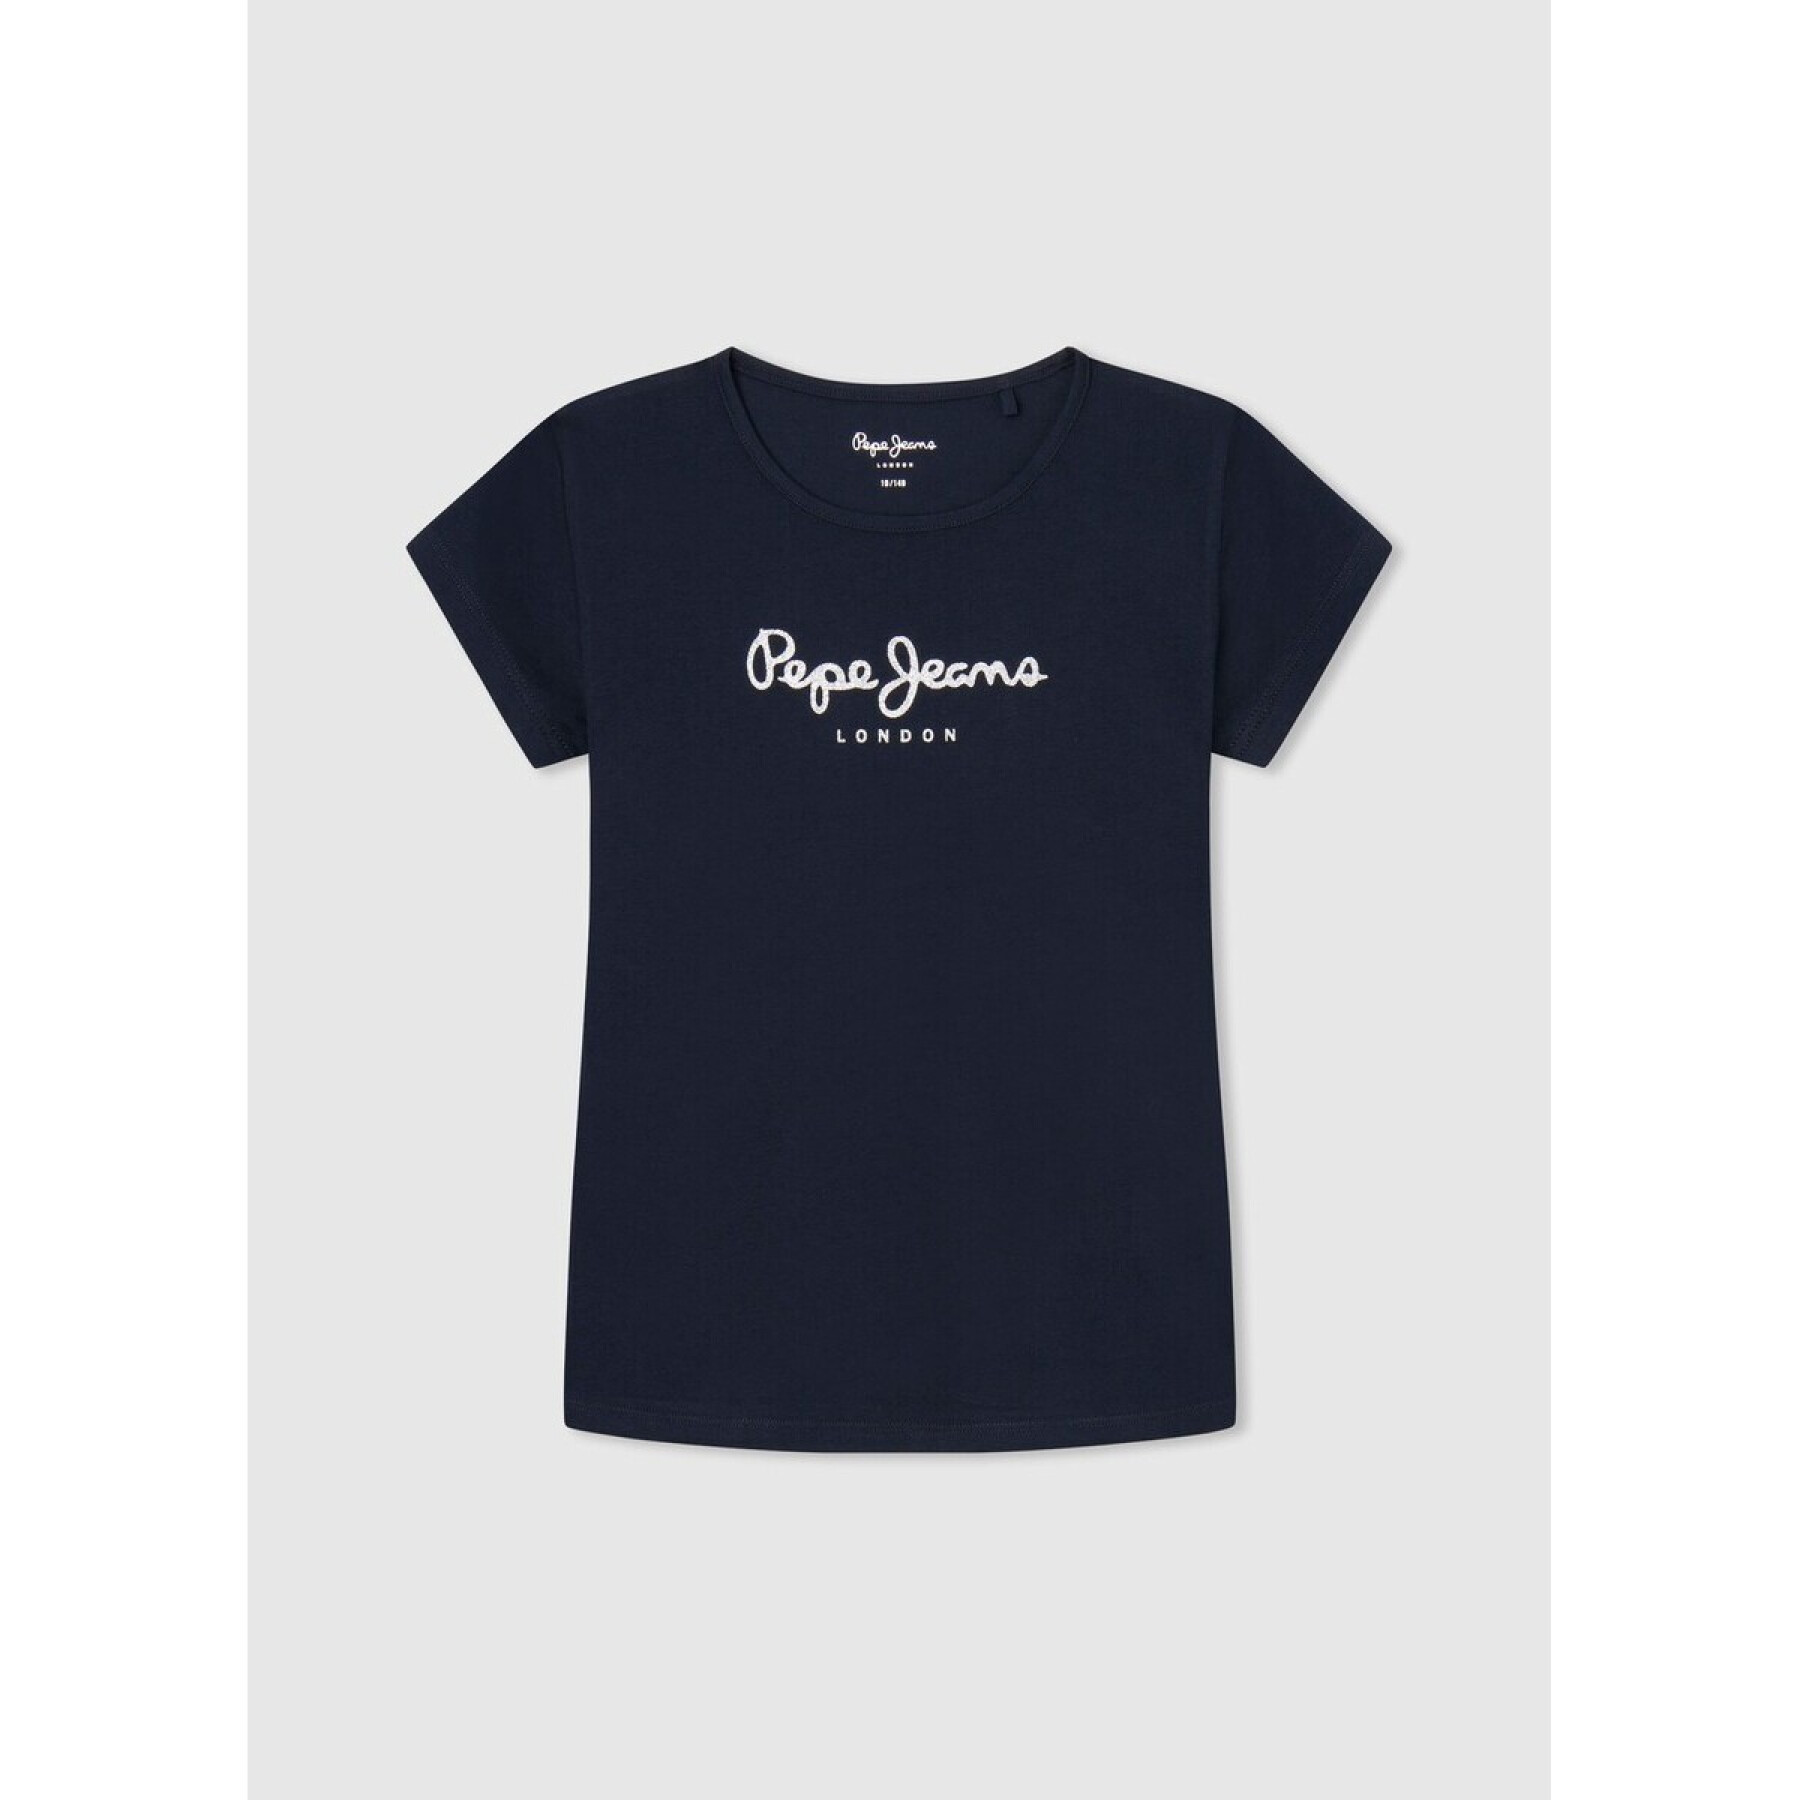 Girl's T-shirt Pepe Jeans Hana Glitter